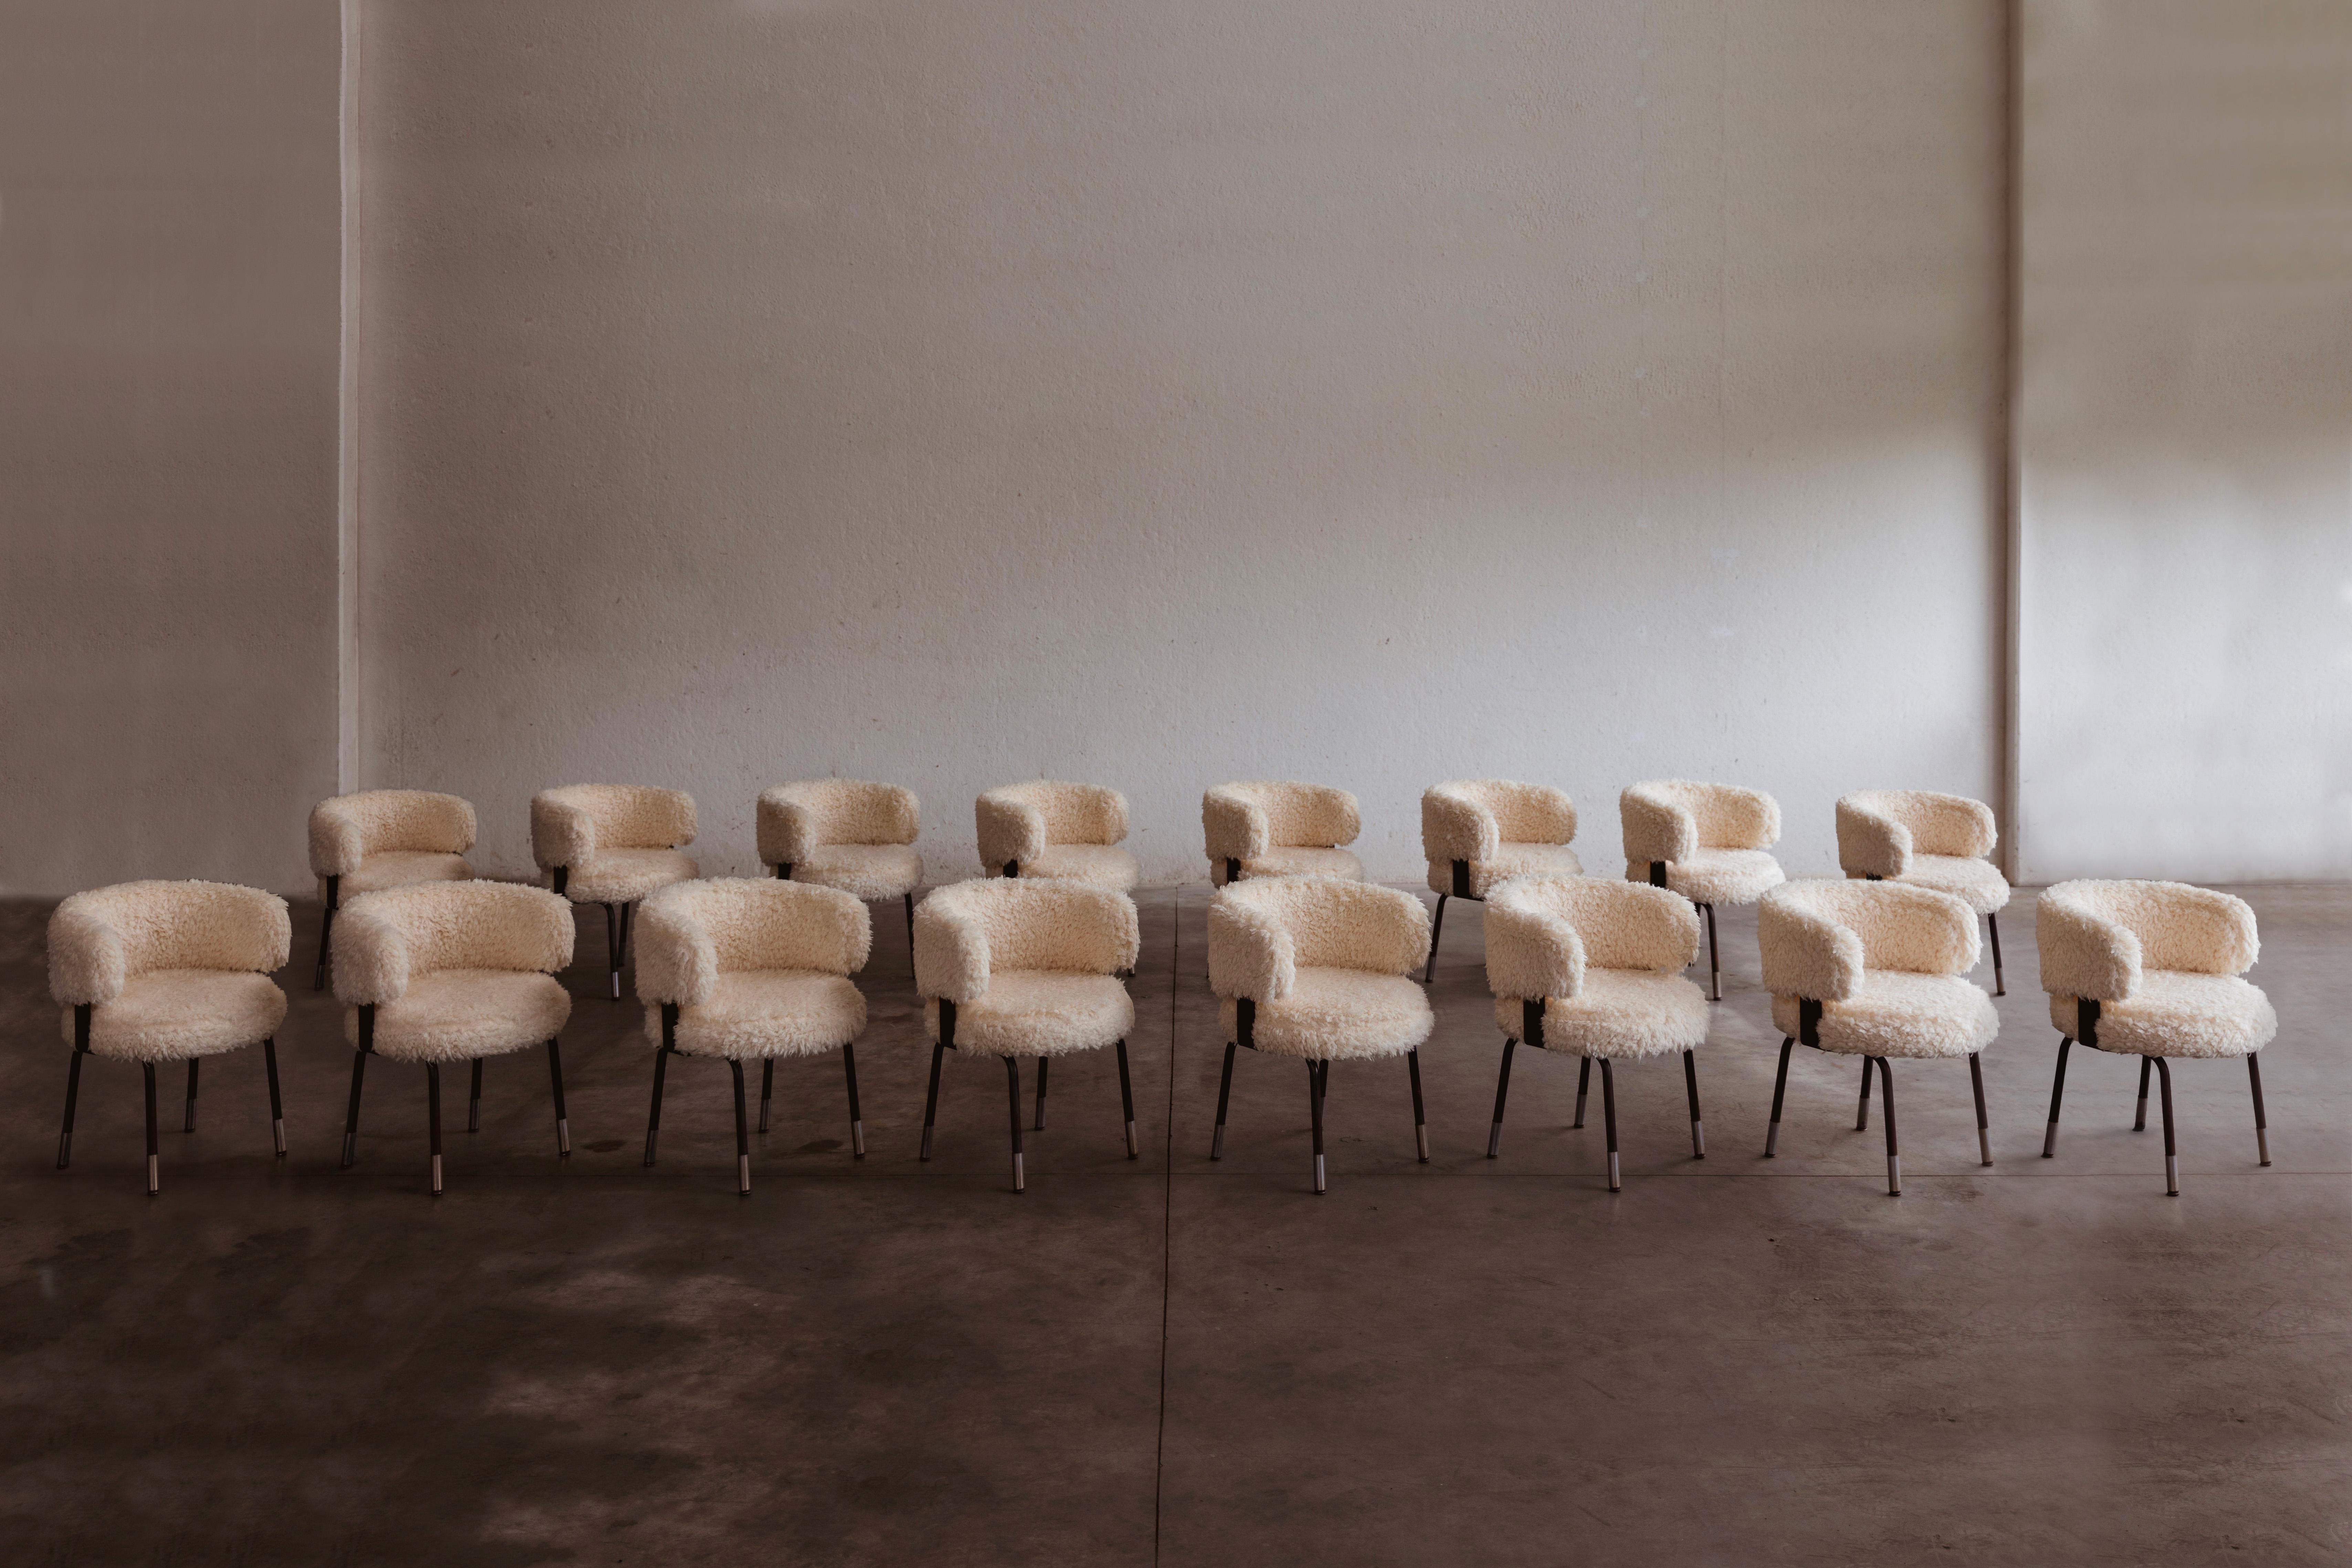 Chaises de salle à manger de Gianni Moscatelli pour Formanova, fausse fourrure et fer, Italie, 1968, ensemble de seize.

Ces chaises sont des objets intemporels conçus par Gianni Moscatelli pour Formanova dans les années 1960. Son design présente